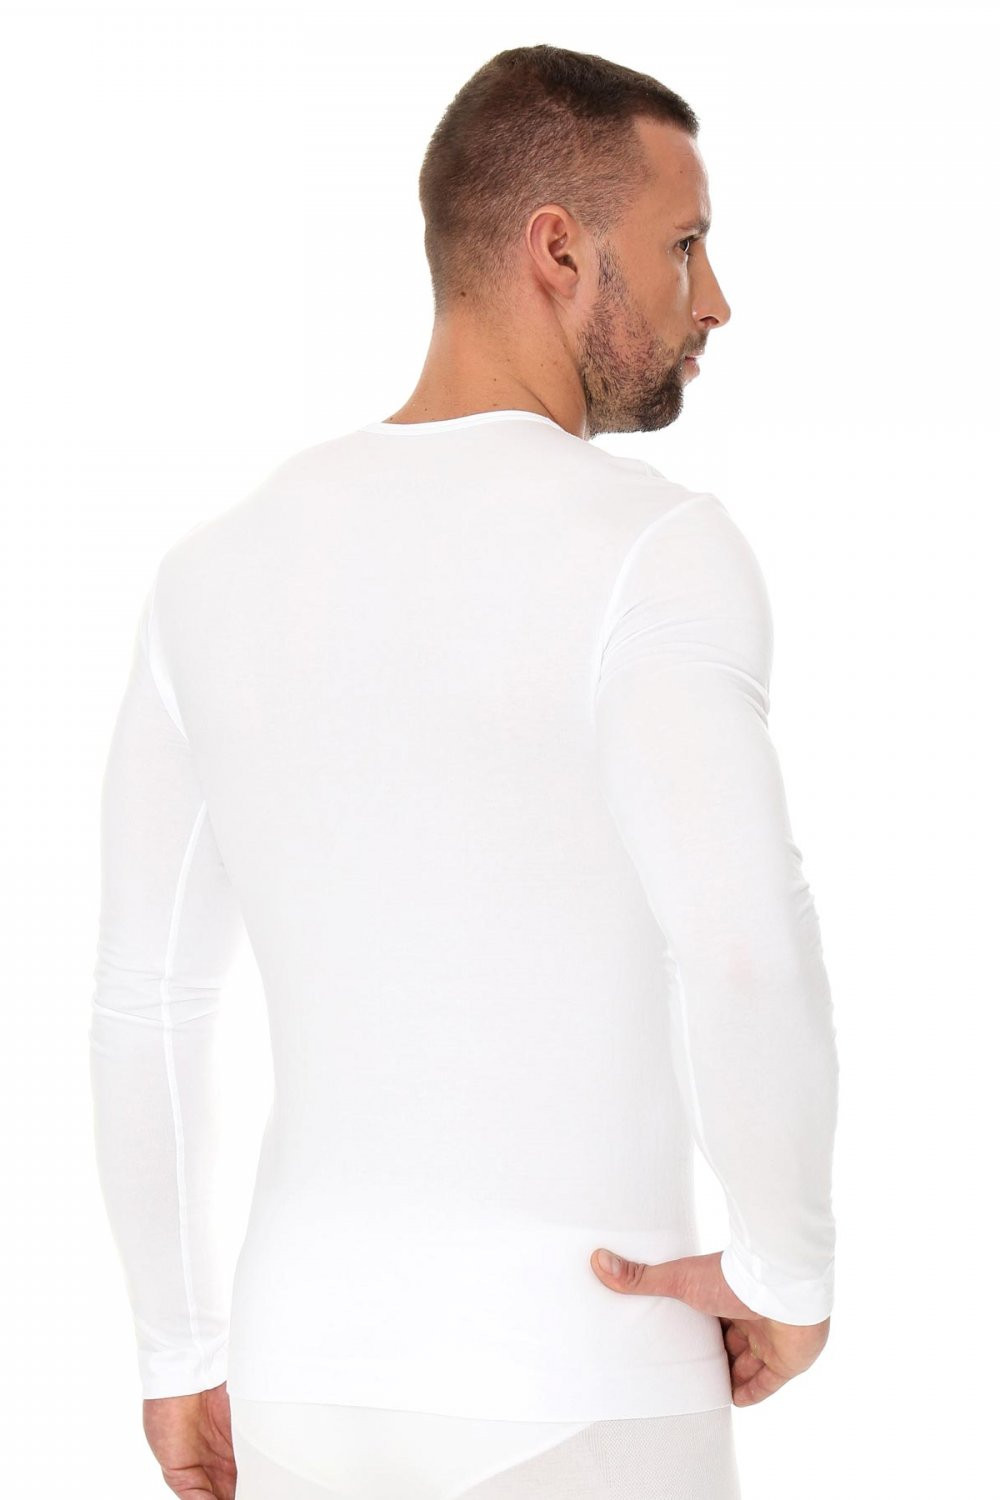 Pánské tričko 1120 white - BRUBECK Bílá XXL